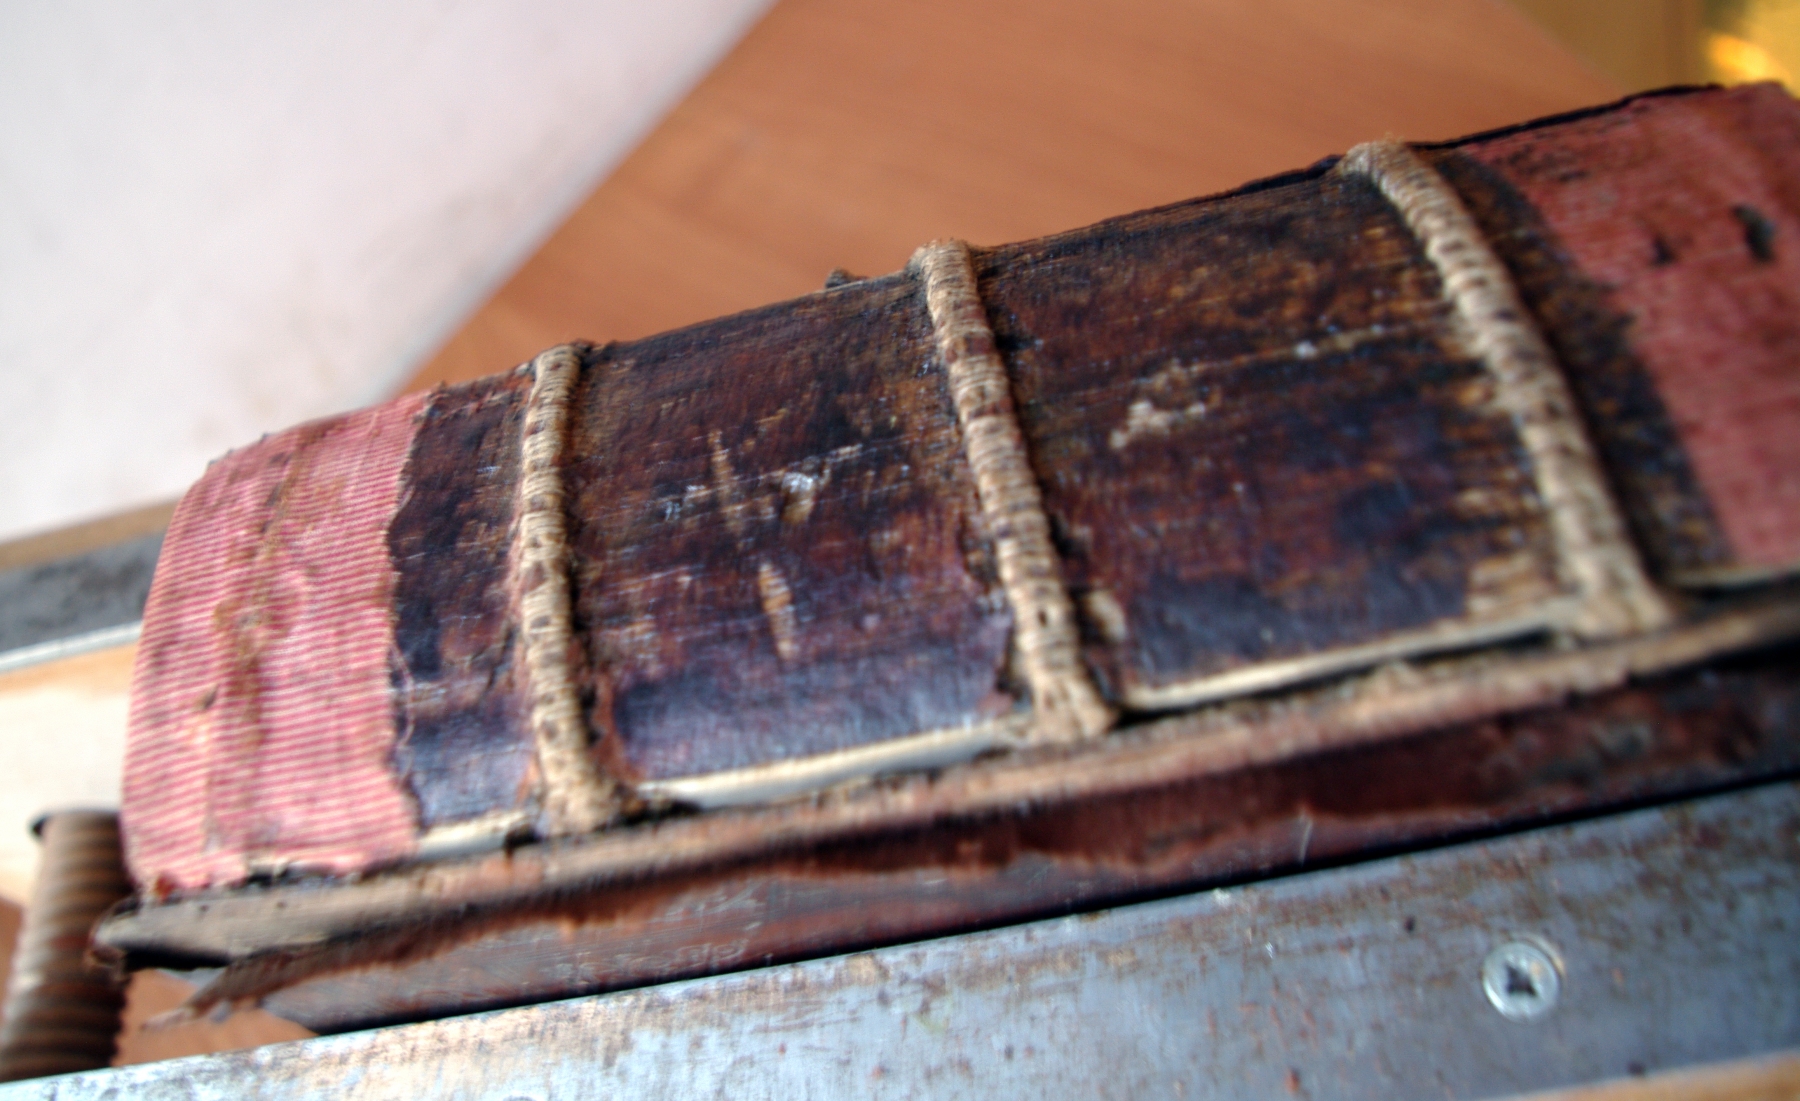 Псалтирь 19 века во время реставрации. Общий вид корешка со шнурами.